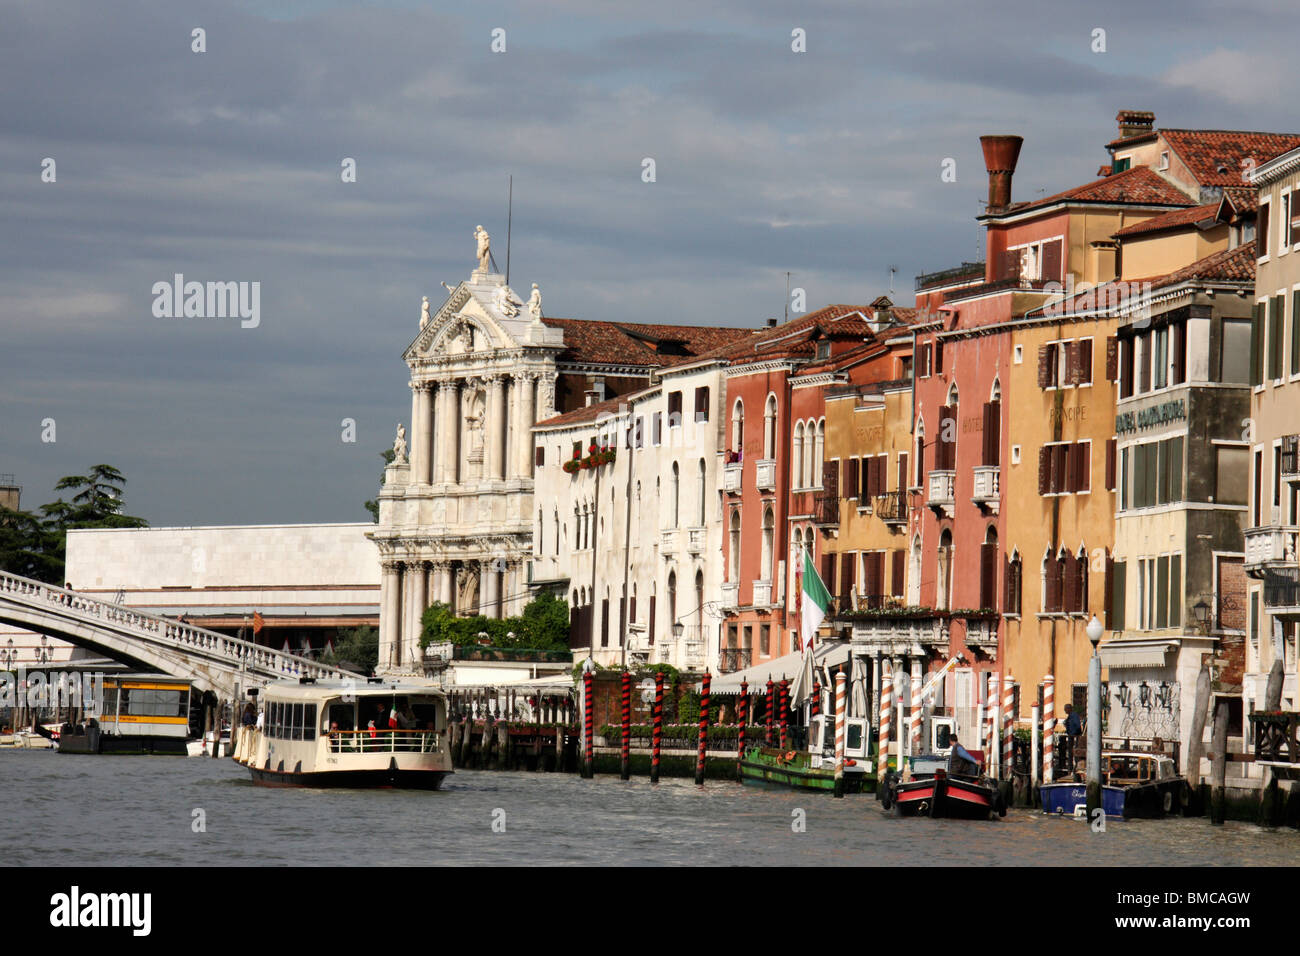 Venedig Canal, Venice, Italien, Urlaub in Venedig, venitial Gondola, Gondel, italienisch Touren, Reisen in Italien Stockfoto